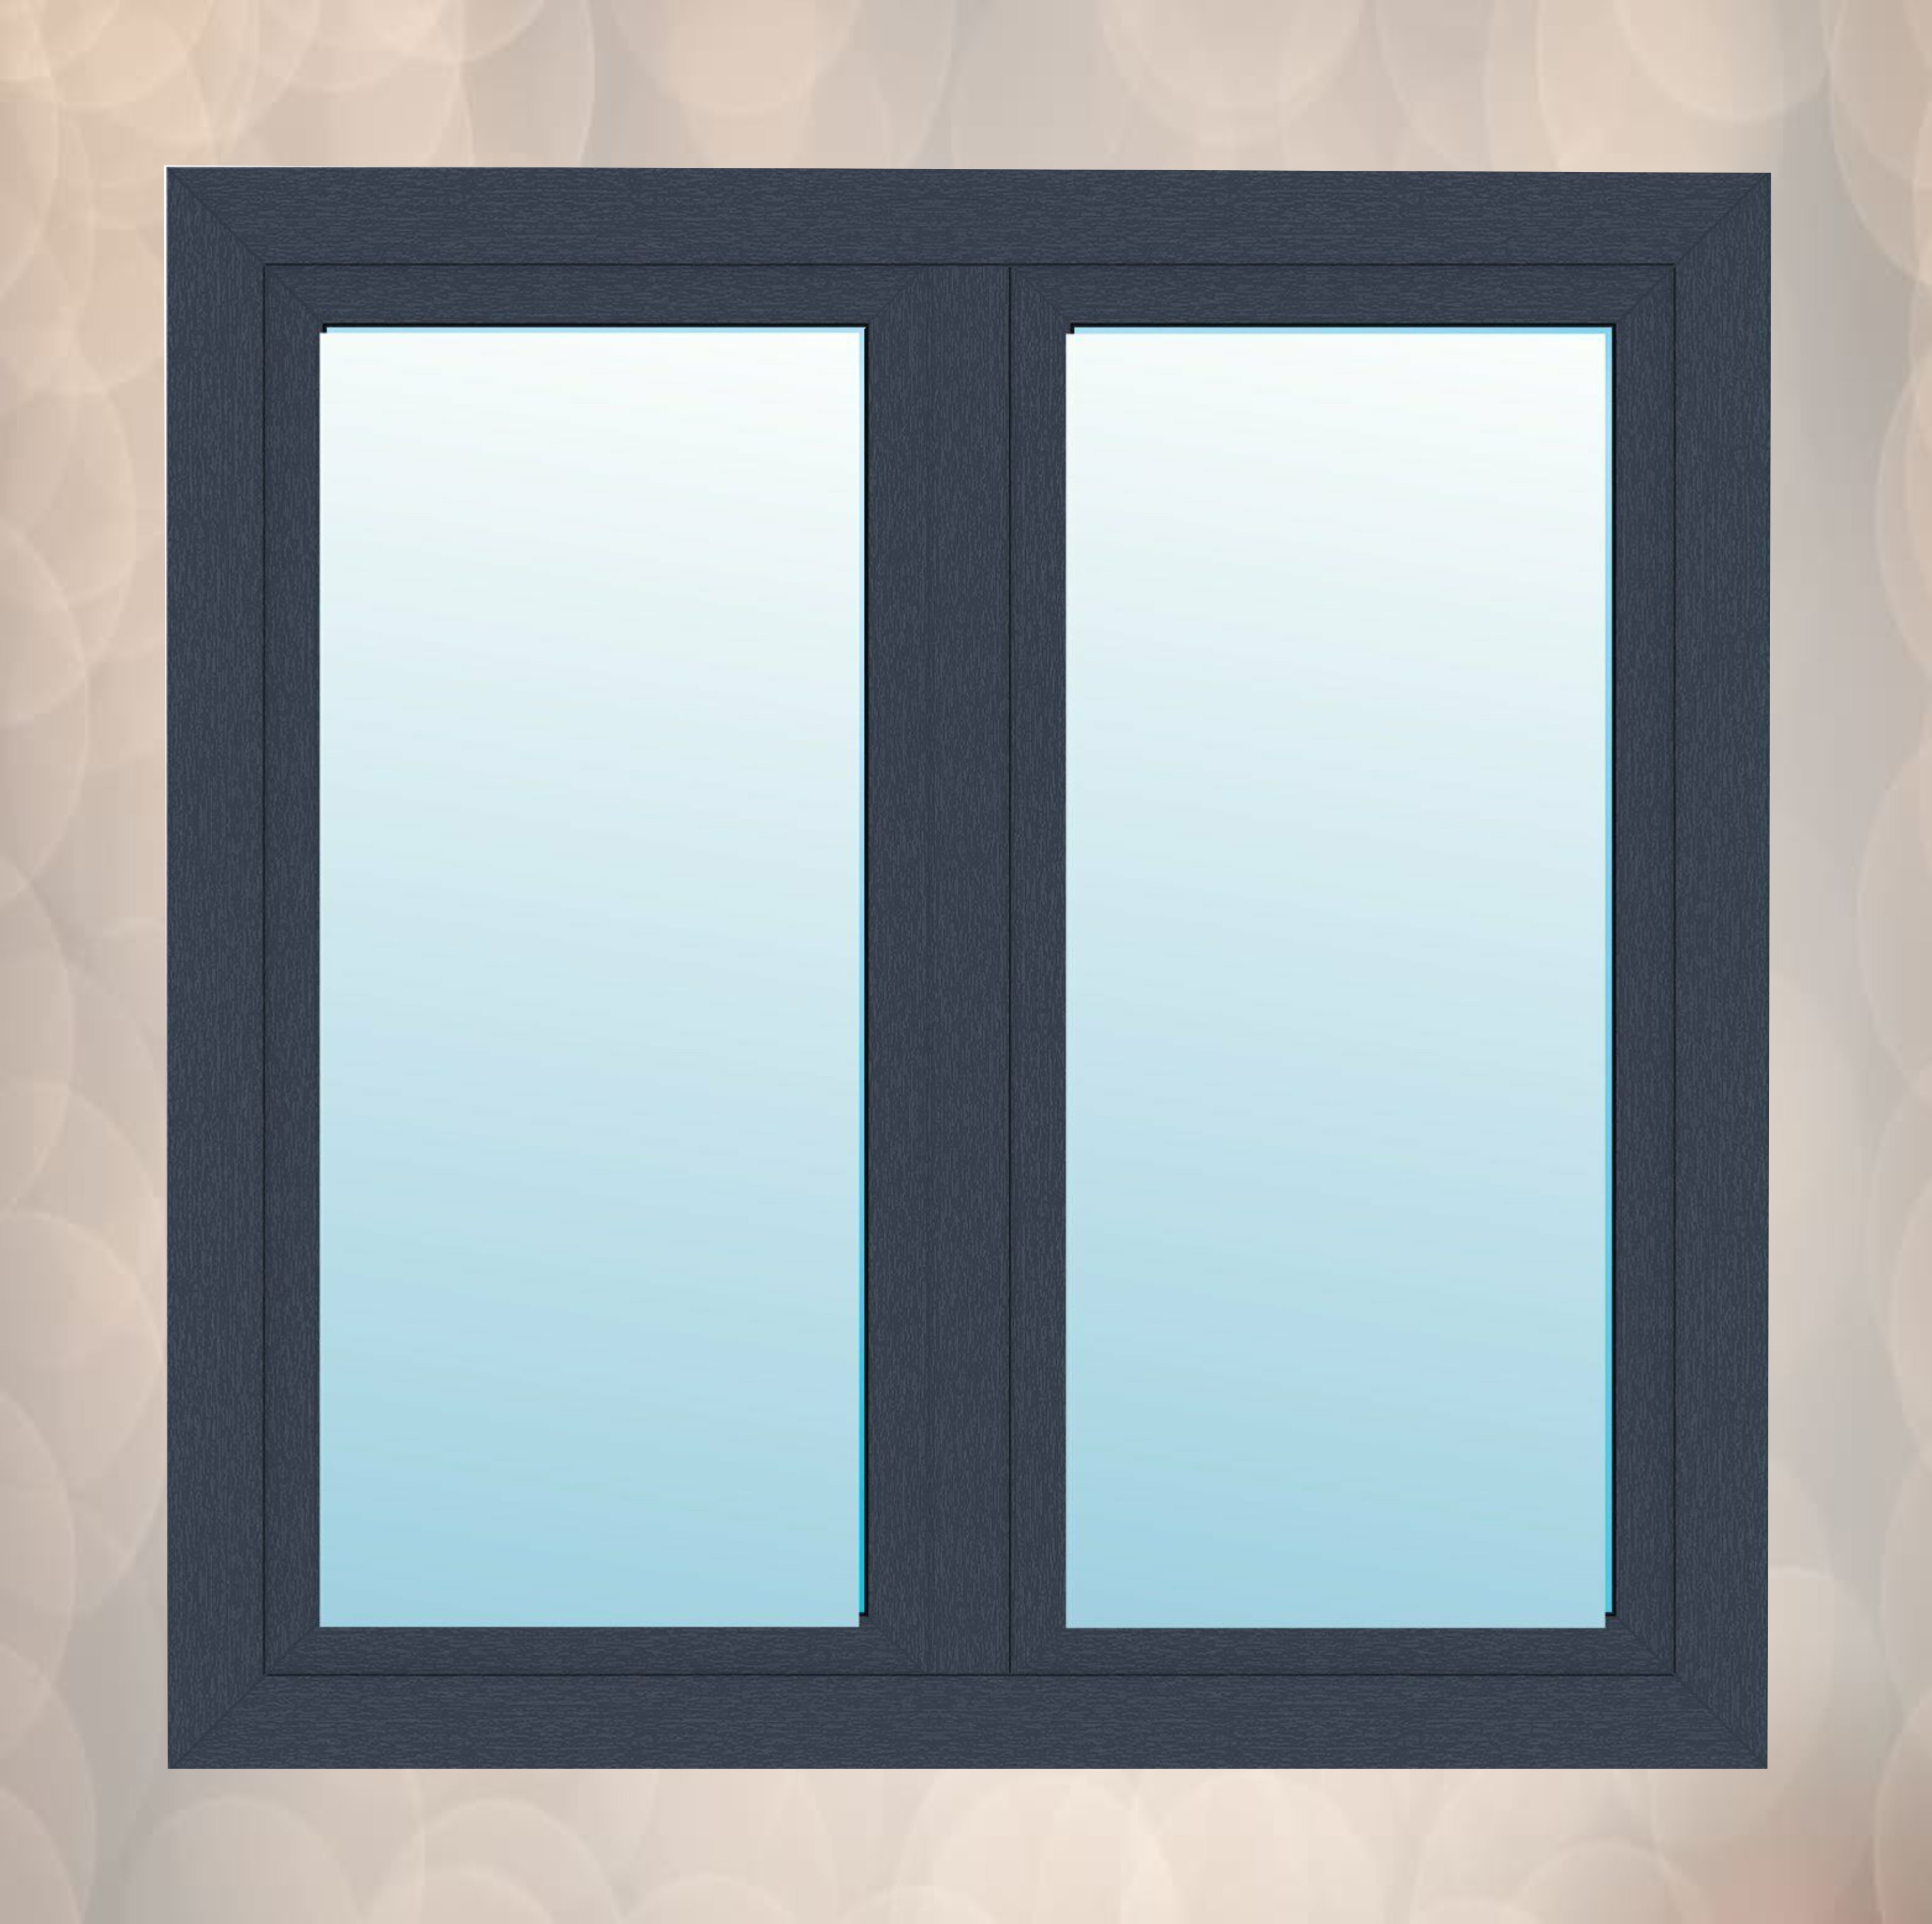 FENSTER(cod 121) Anthrazit Pfostenfenster 2-flügliges Kunststofffenster Fenster